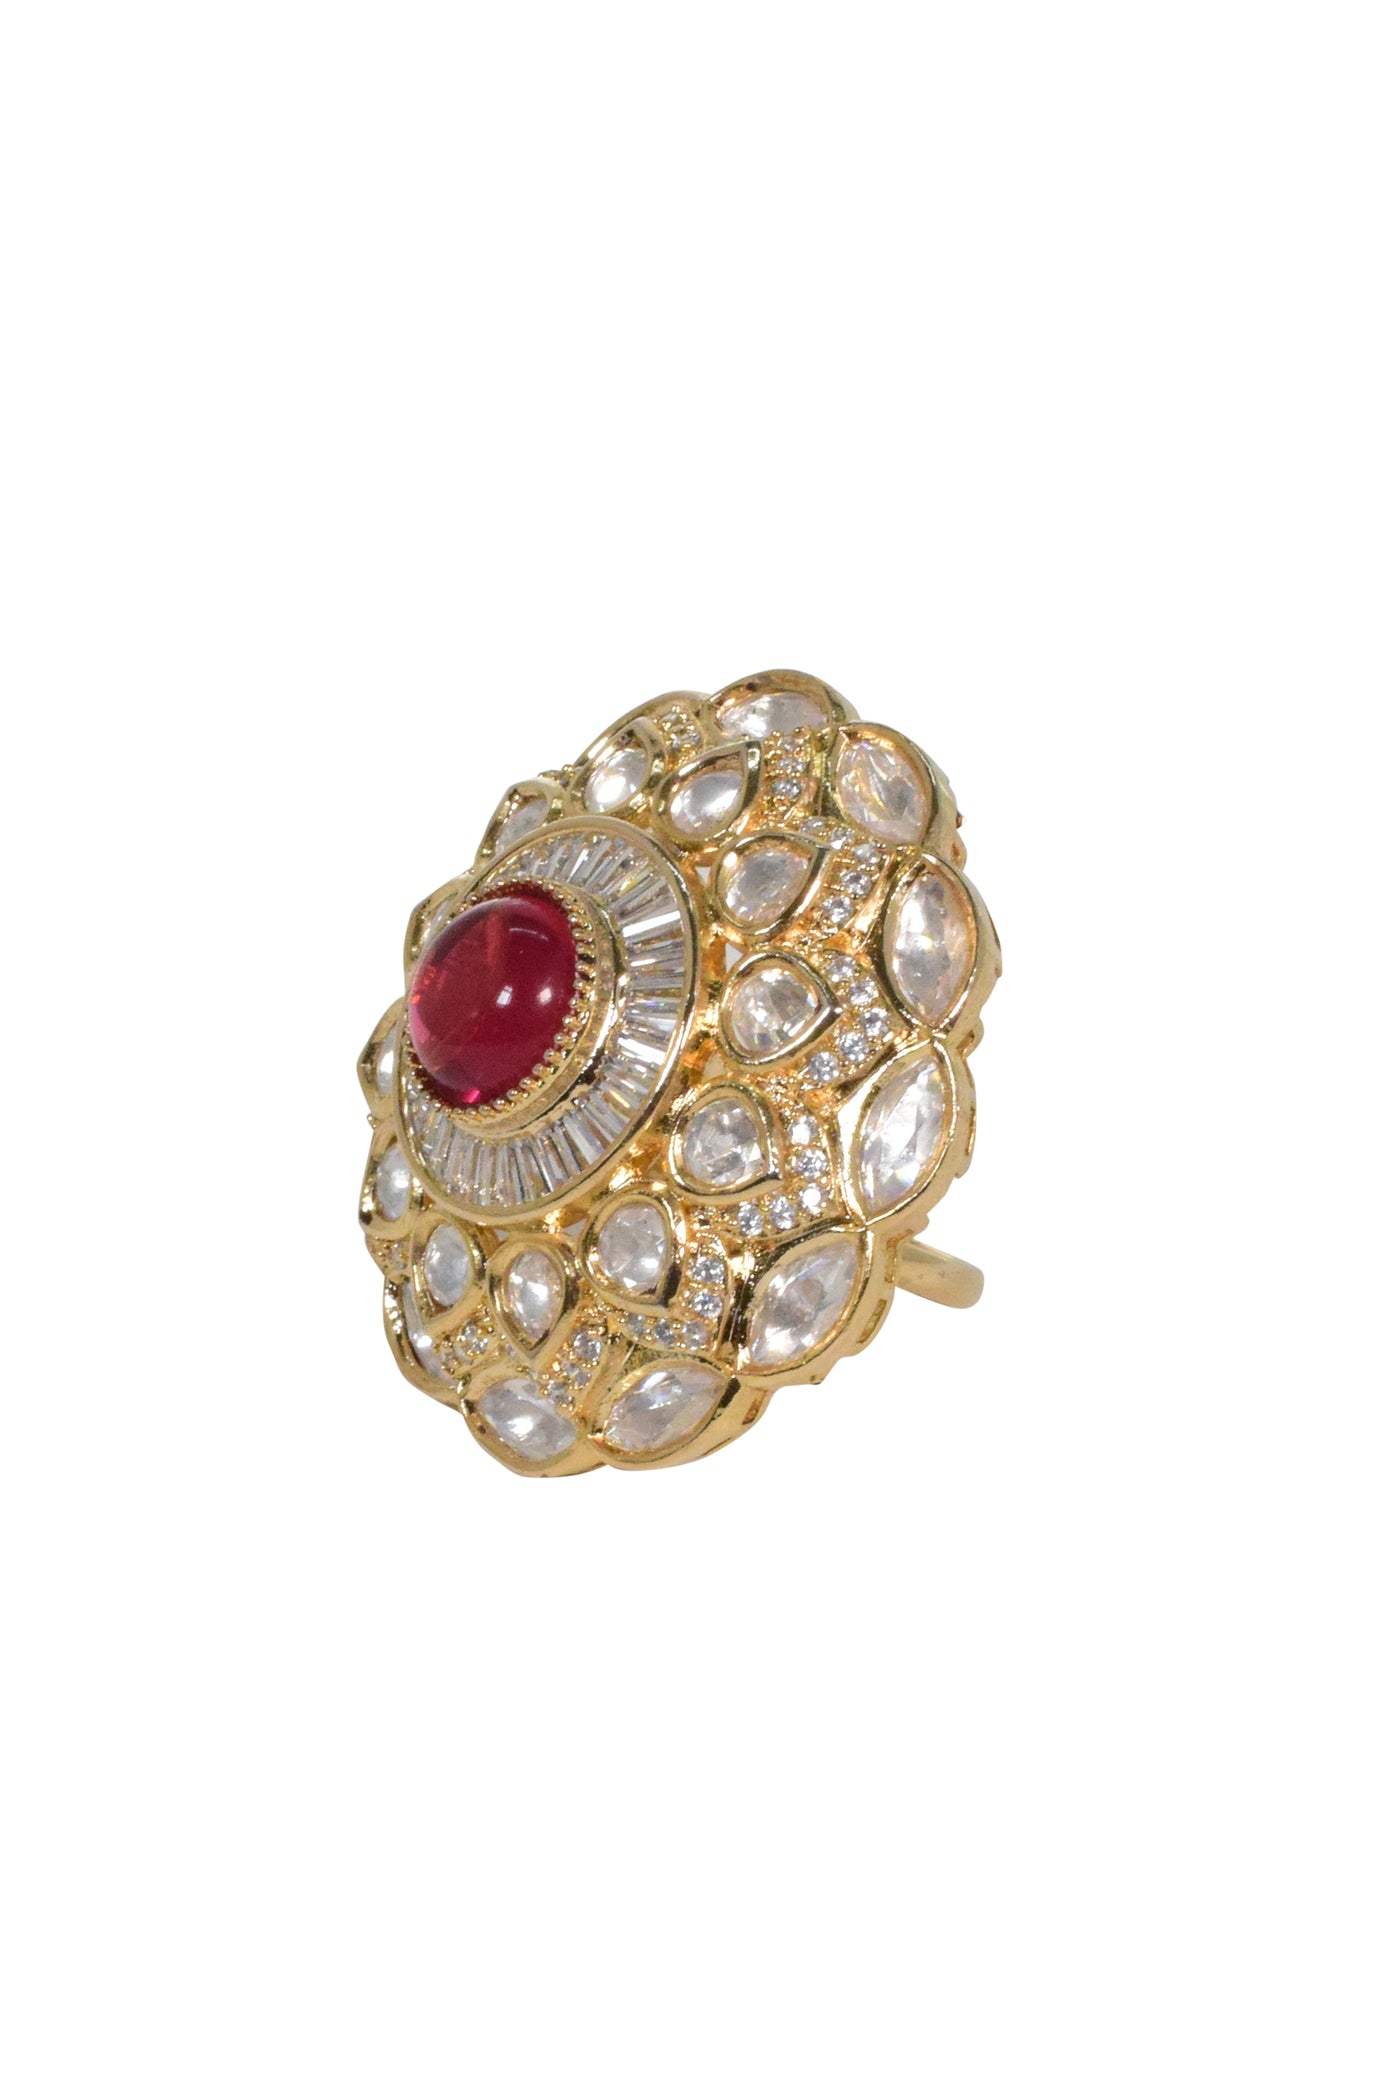 Tizora Red Polki Ring jewellery indian designer wear online shopping melange singapore